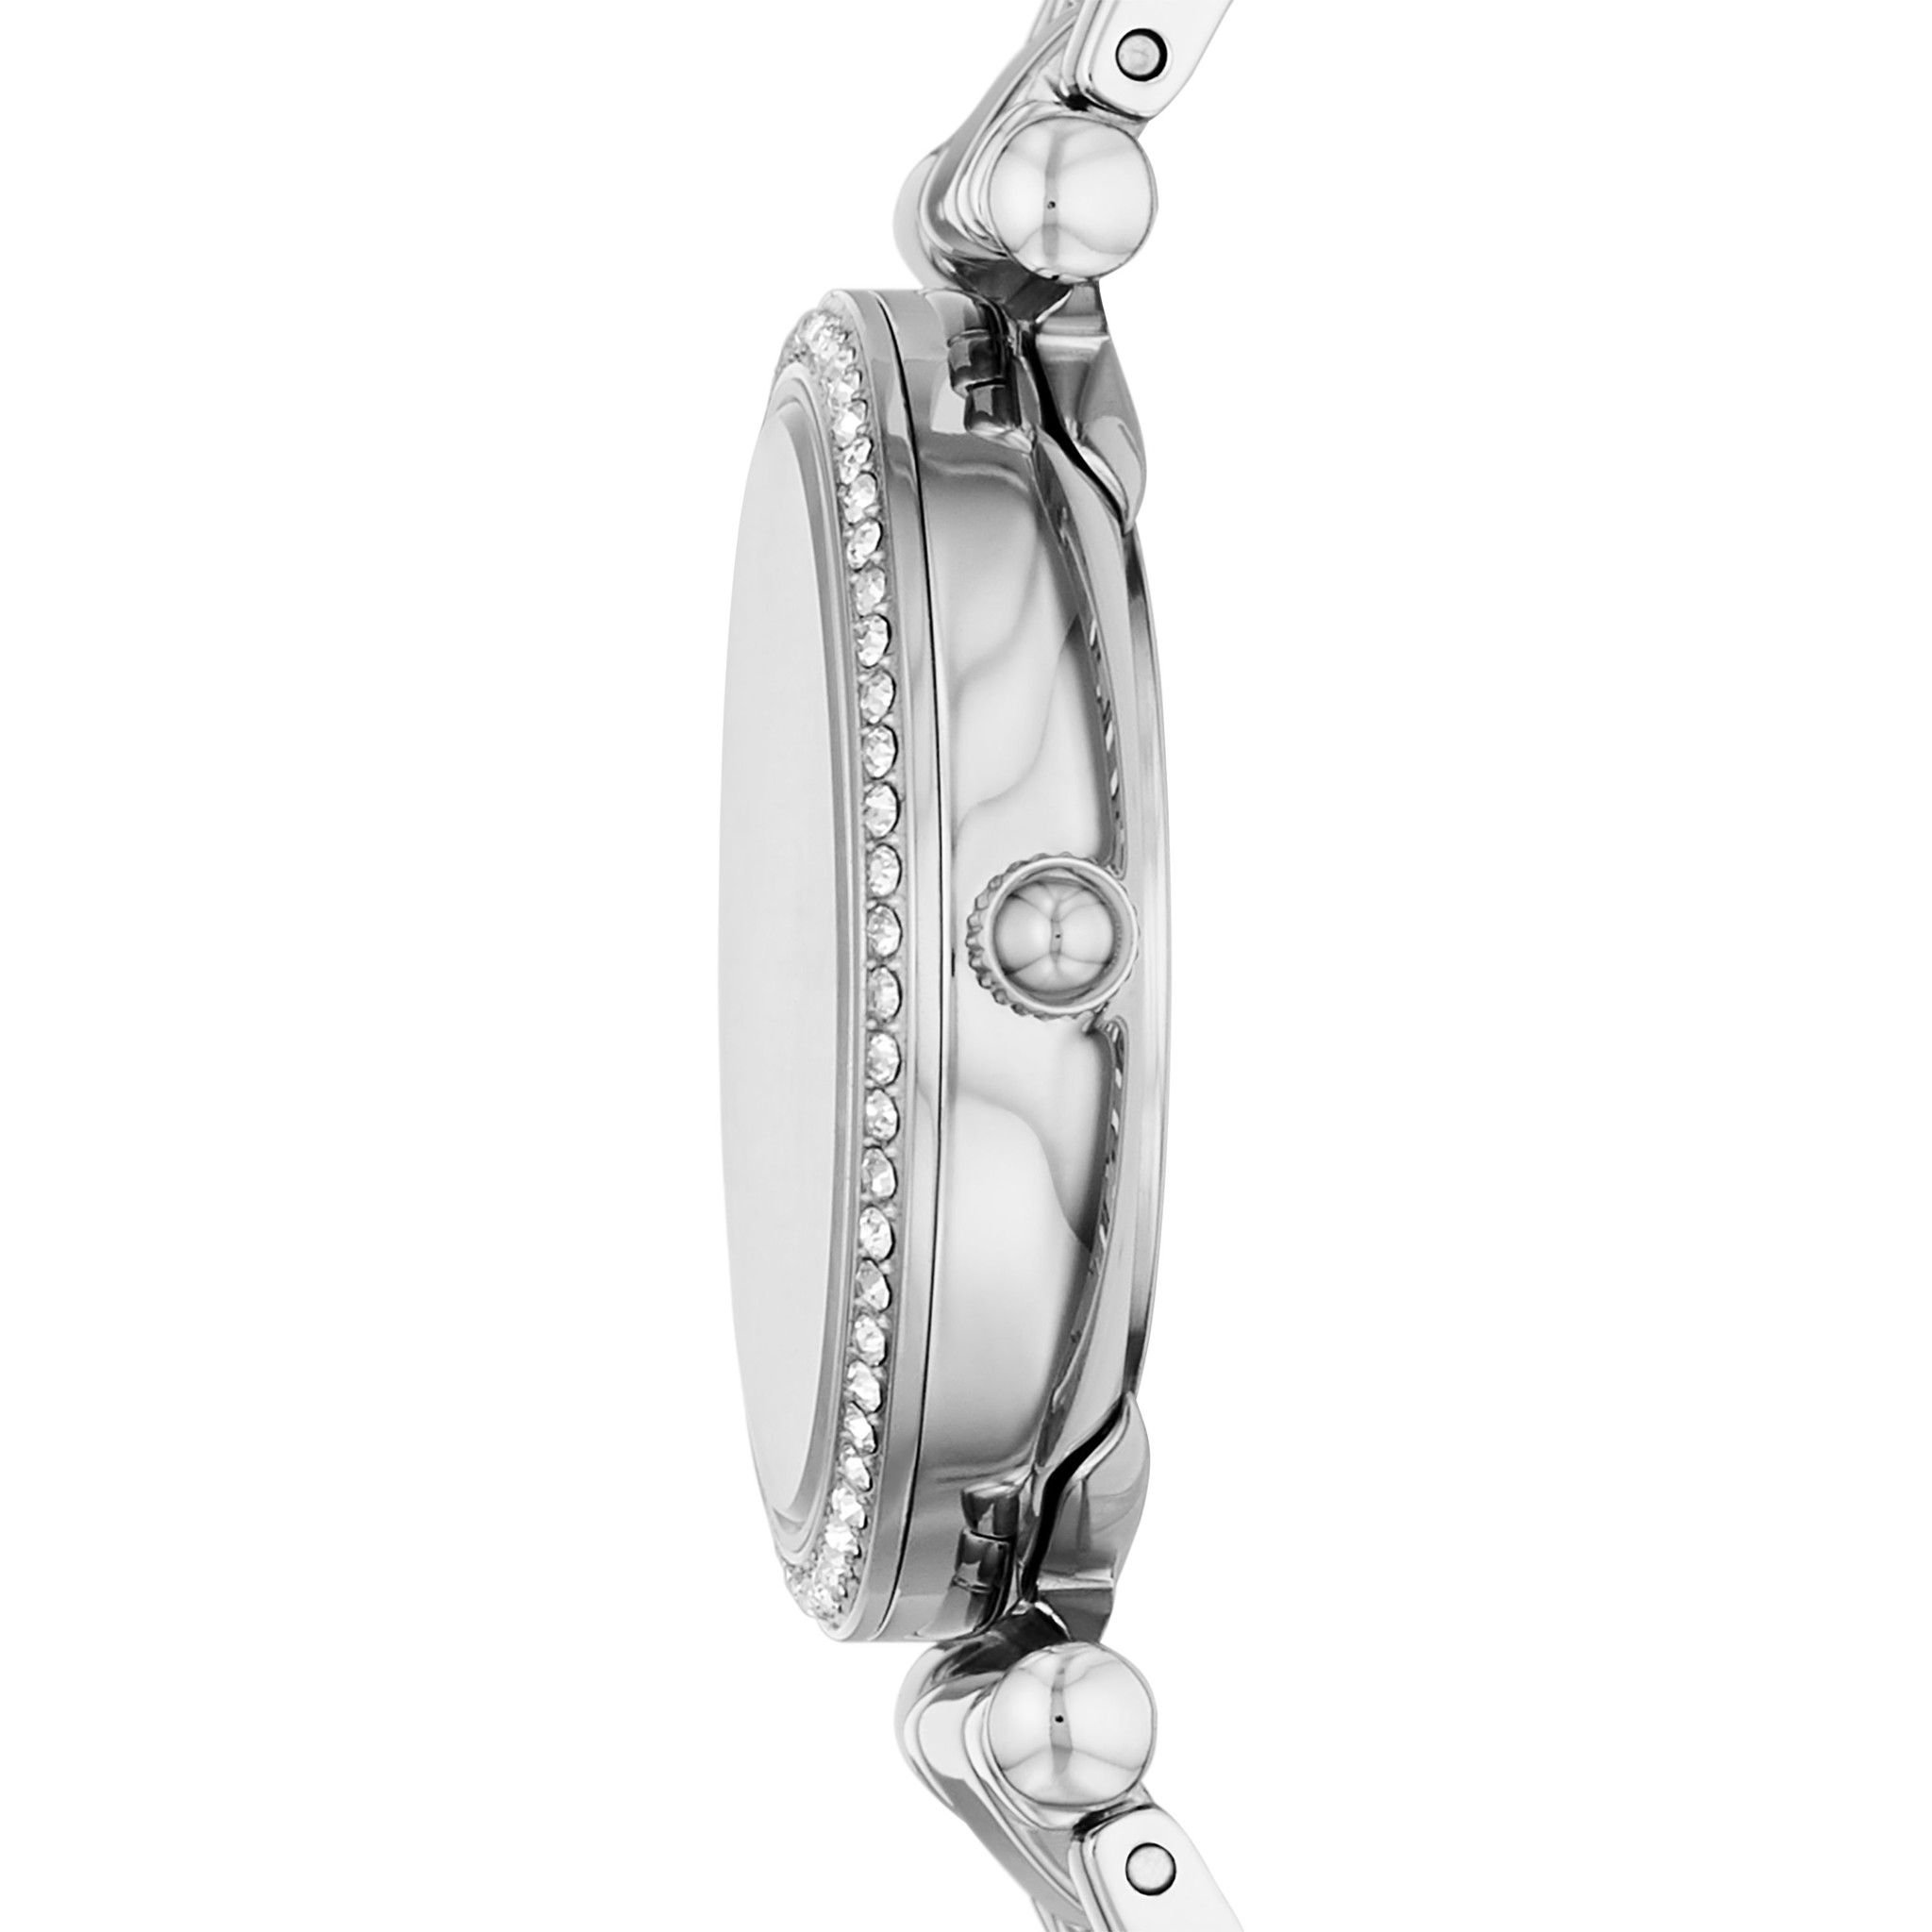  Đồng hồ nữ Fossil CARLIE dây thép không gỉ ES5250SET - màu bạc 